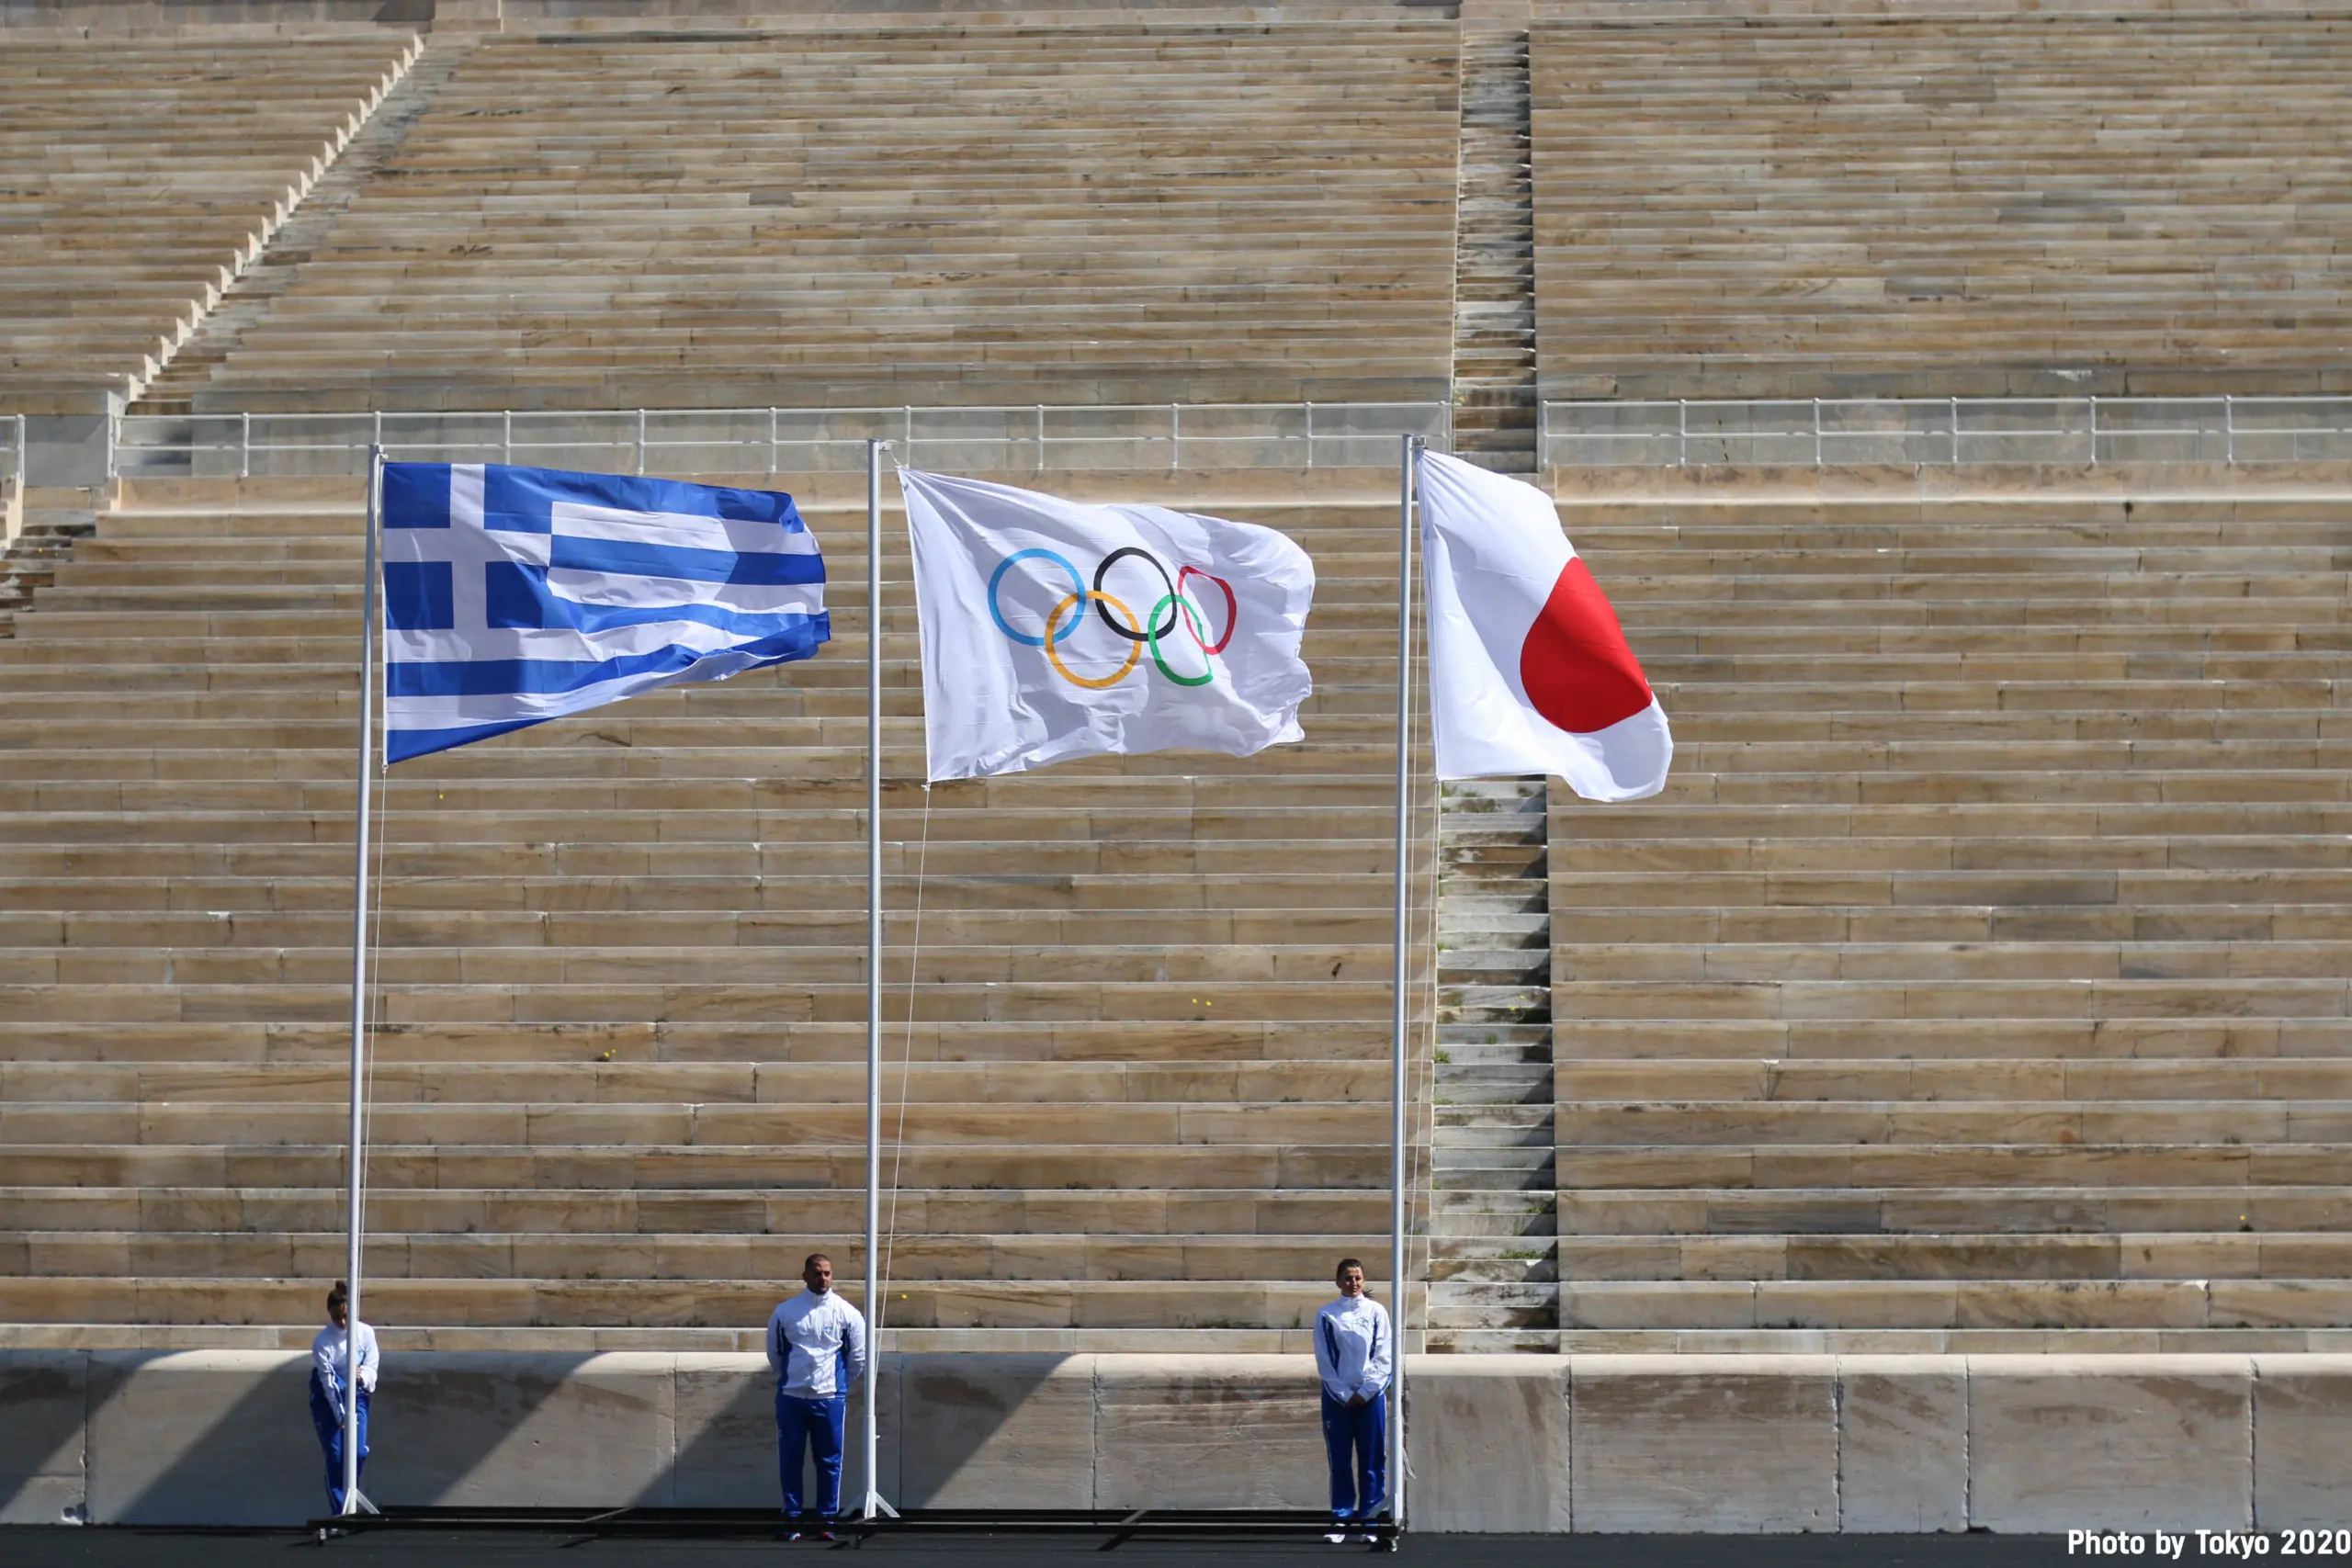 Tocha sai da Grécia para turnê mundial antes dos jogos de 2020